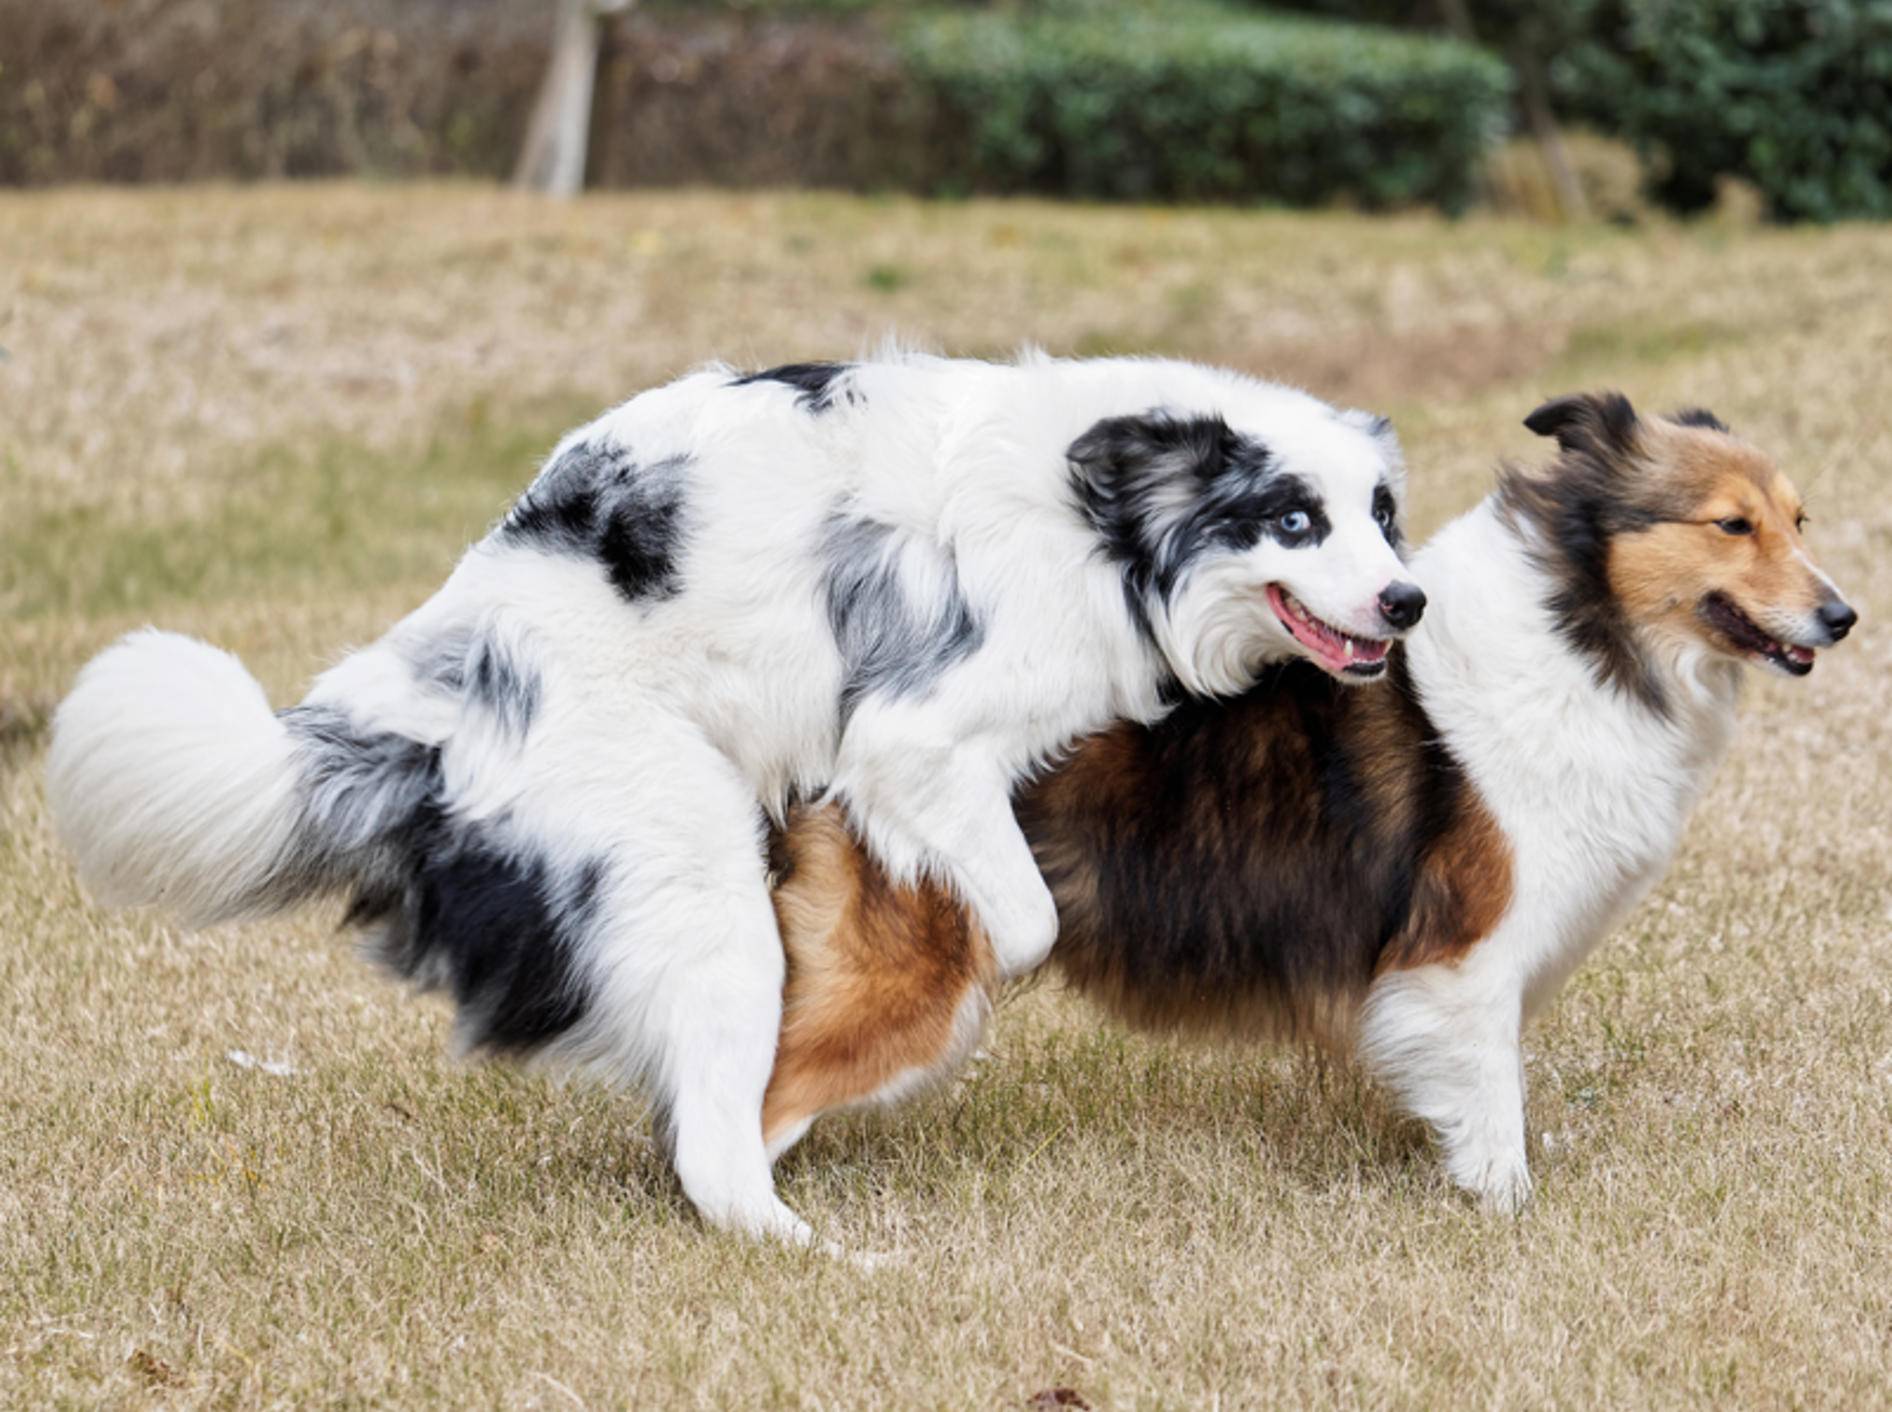 Zwei Hunde in flagranti beim Deckakt: "Hey! Nicht gucken! Hier gibt es nichts zu sehen." – Shutterstock / atiger